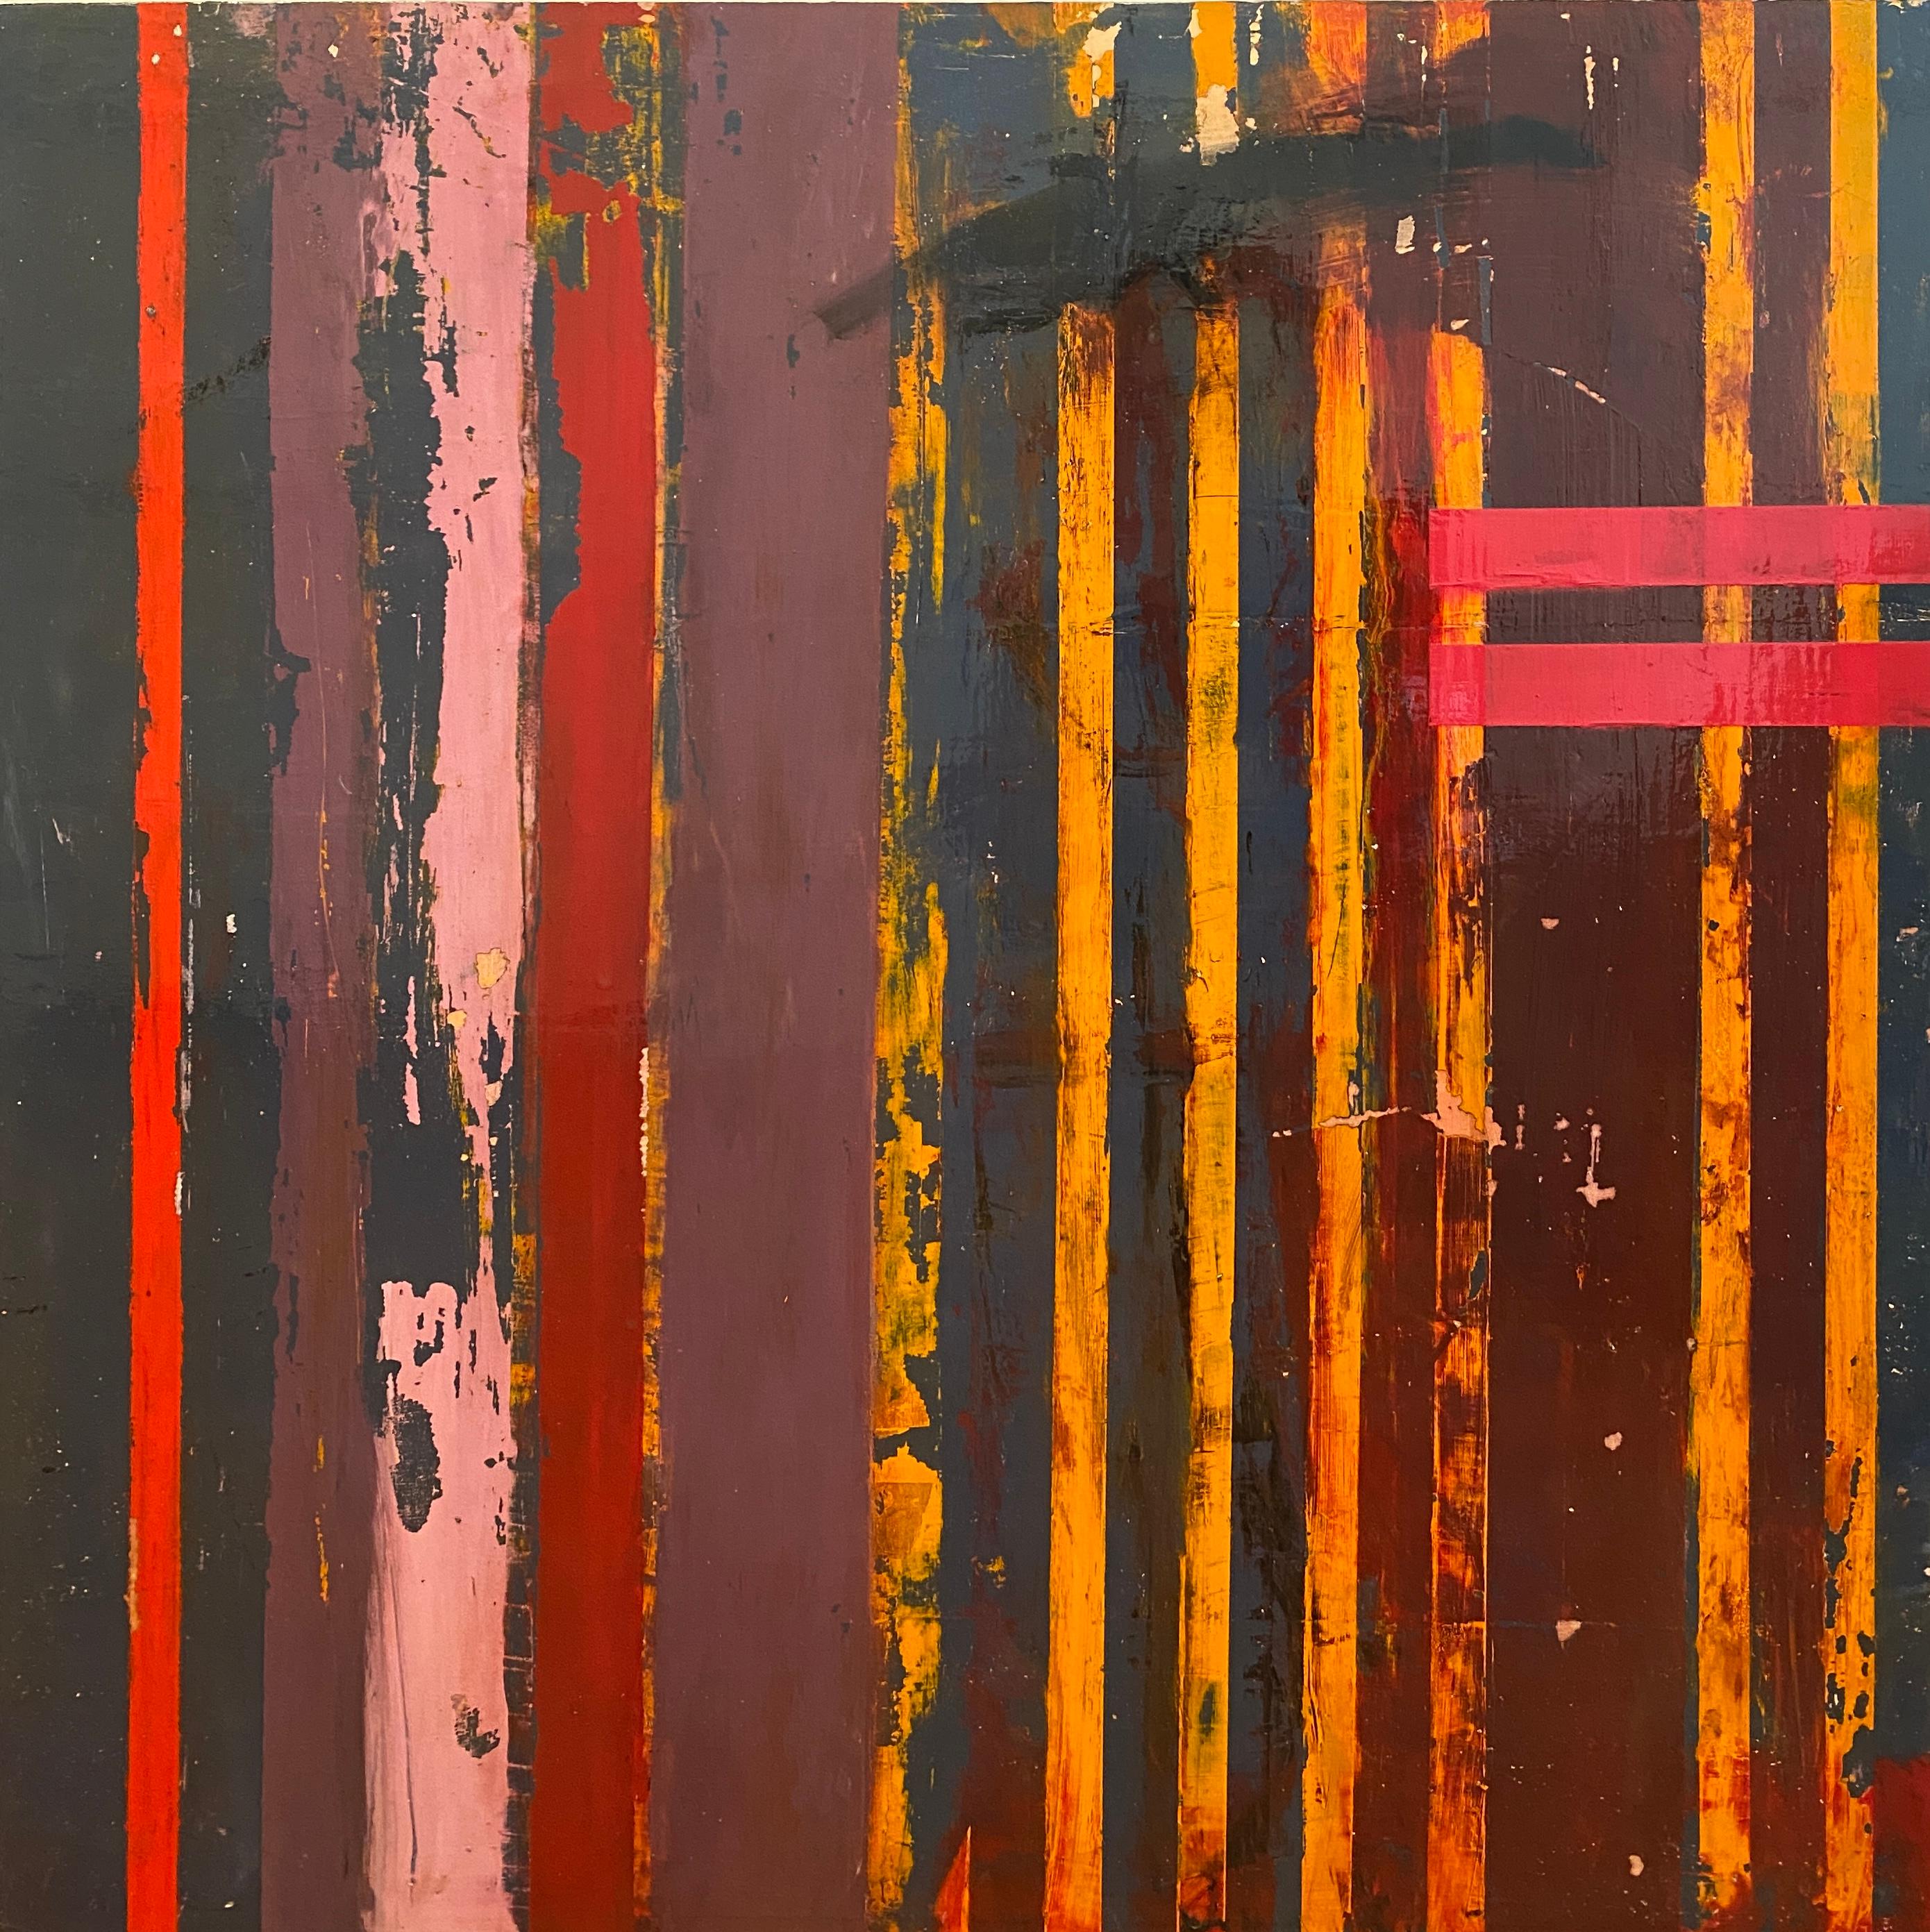 Lisa Lightman Abstract Painting – Wandmalerei in Florenz: rote und orangefarbene Streifen auf Karton, 2019